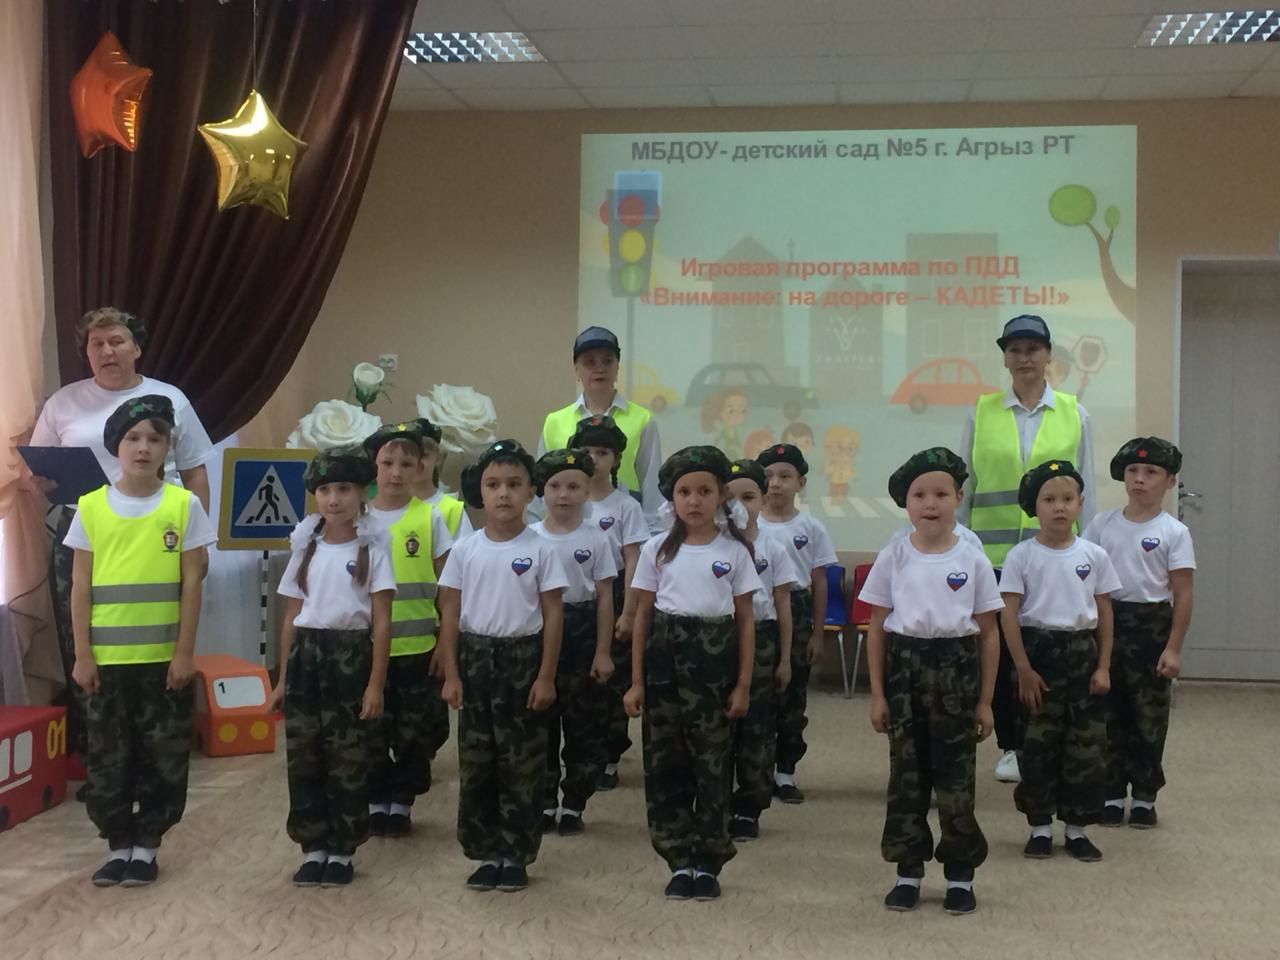 Юные кадеты продемонстрировали свои знания ПДД